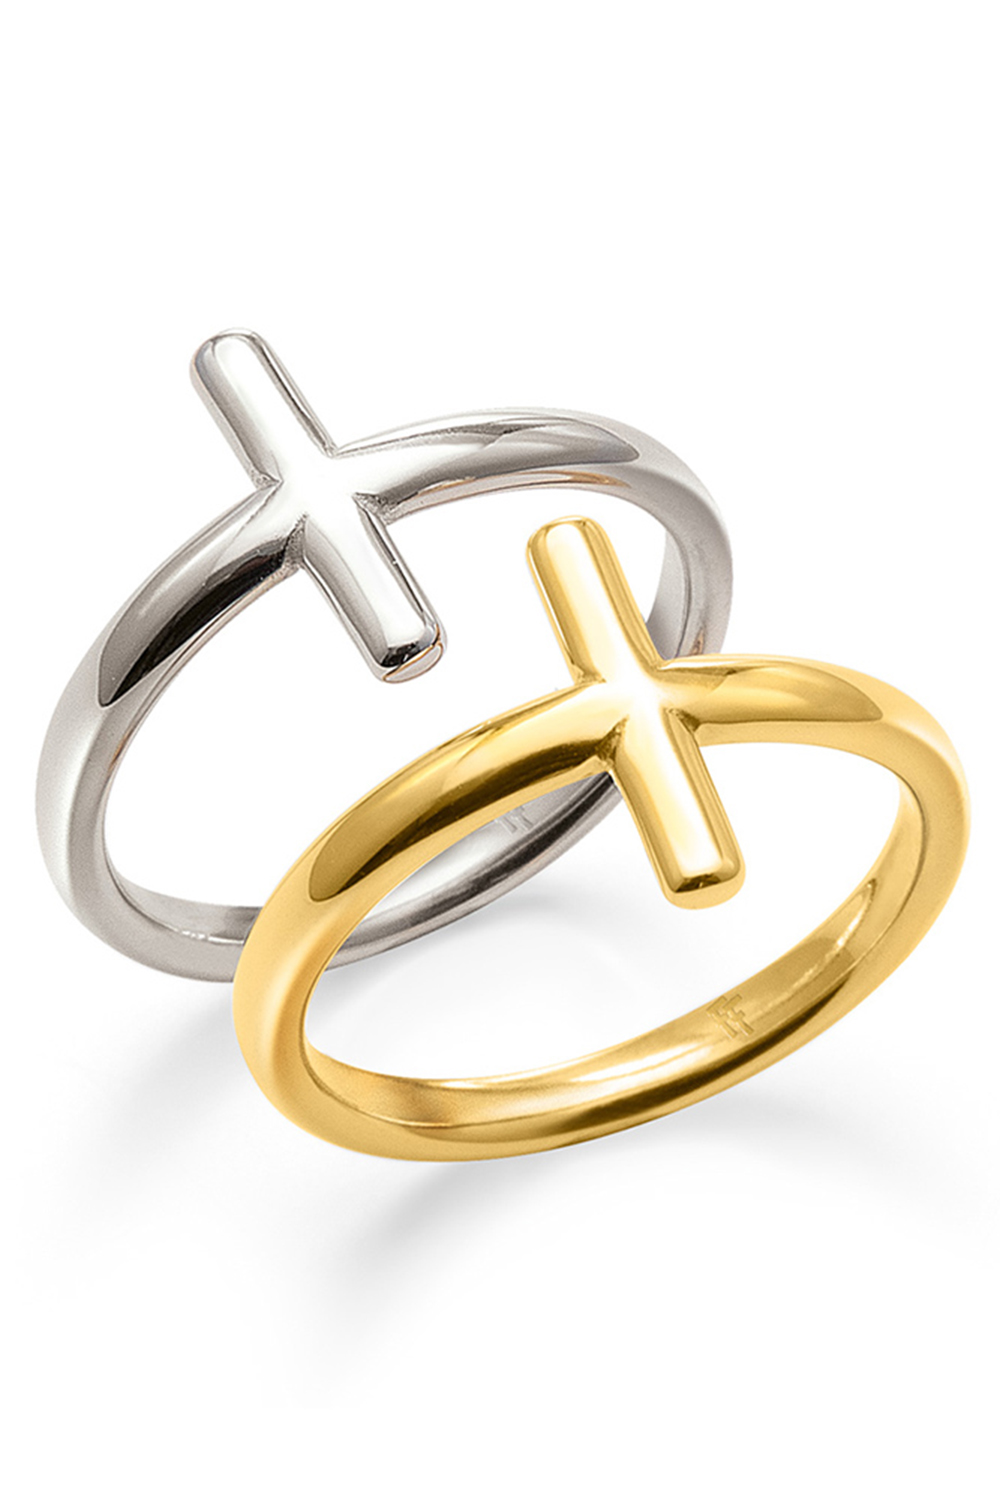 Γυναικεία/Αξεσουάρ/Κοσμήματα/Δαχτυλίδια FOLLI FOLLIE - Γυναικείο σετ δύο δαχτυλίδια από ορείχαλκο FOLLI FOLLIE CARMA χρυσό ασημί